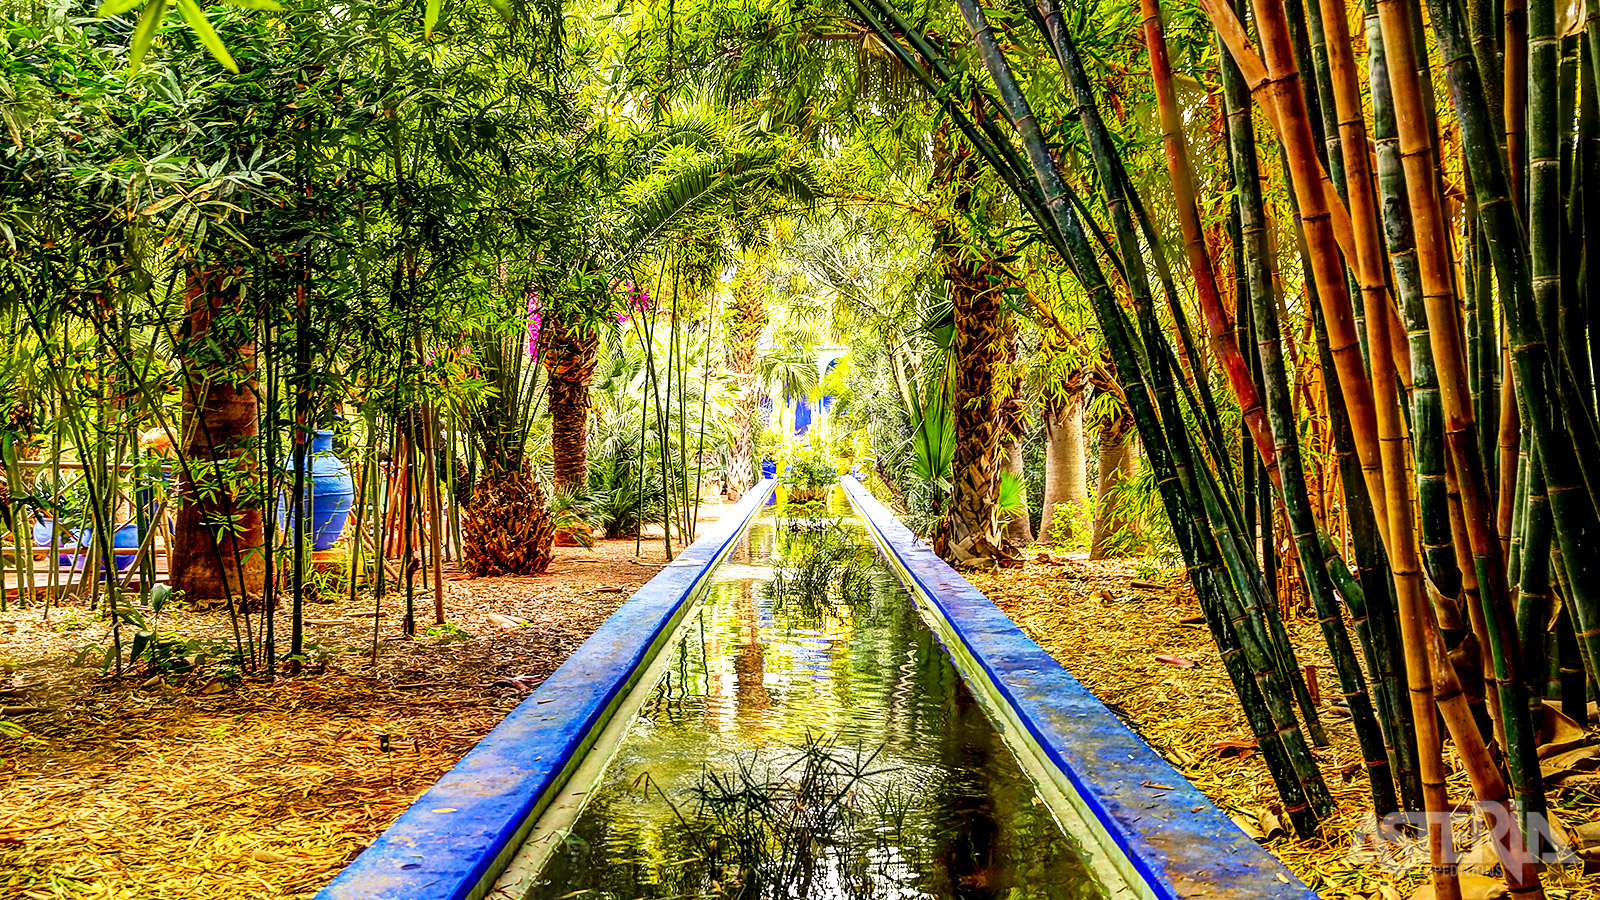 De tuin werd ontworpen door de Franse kunstenaar Jacques Majorelle in 1924, toen Marokko een protectoraat was van Frankrijk